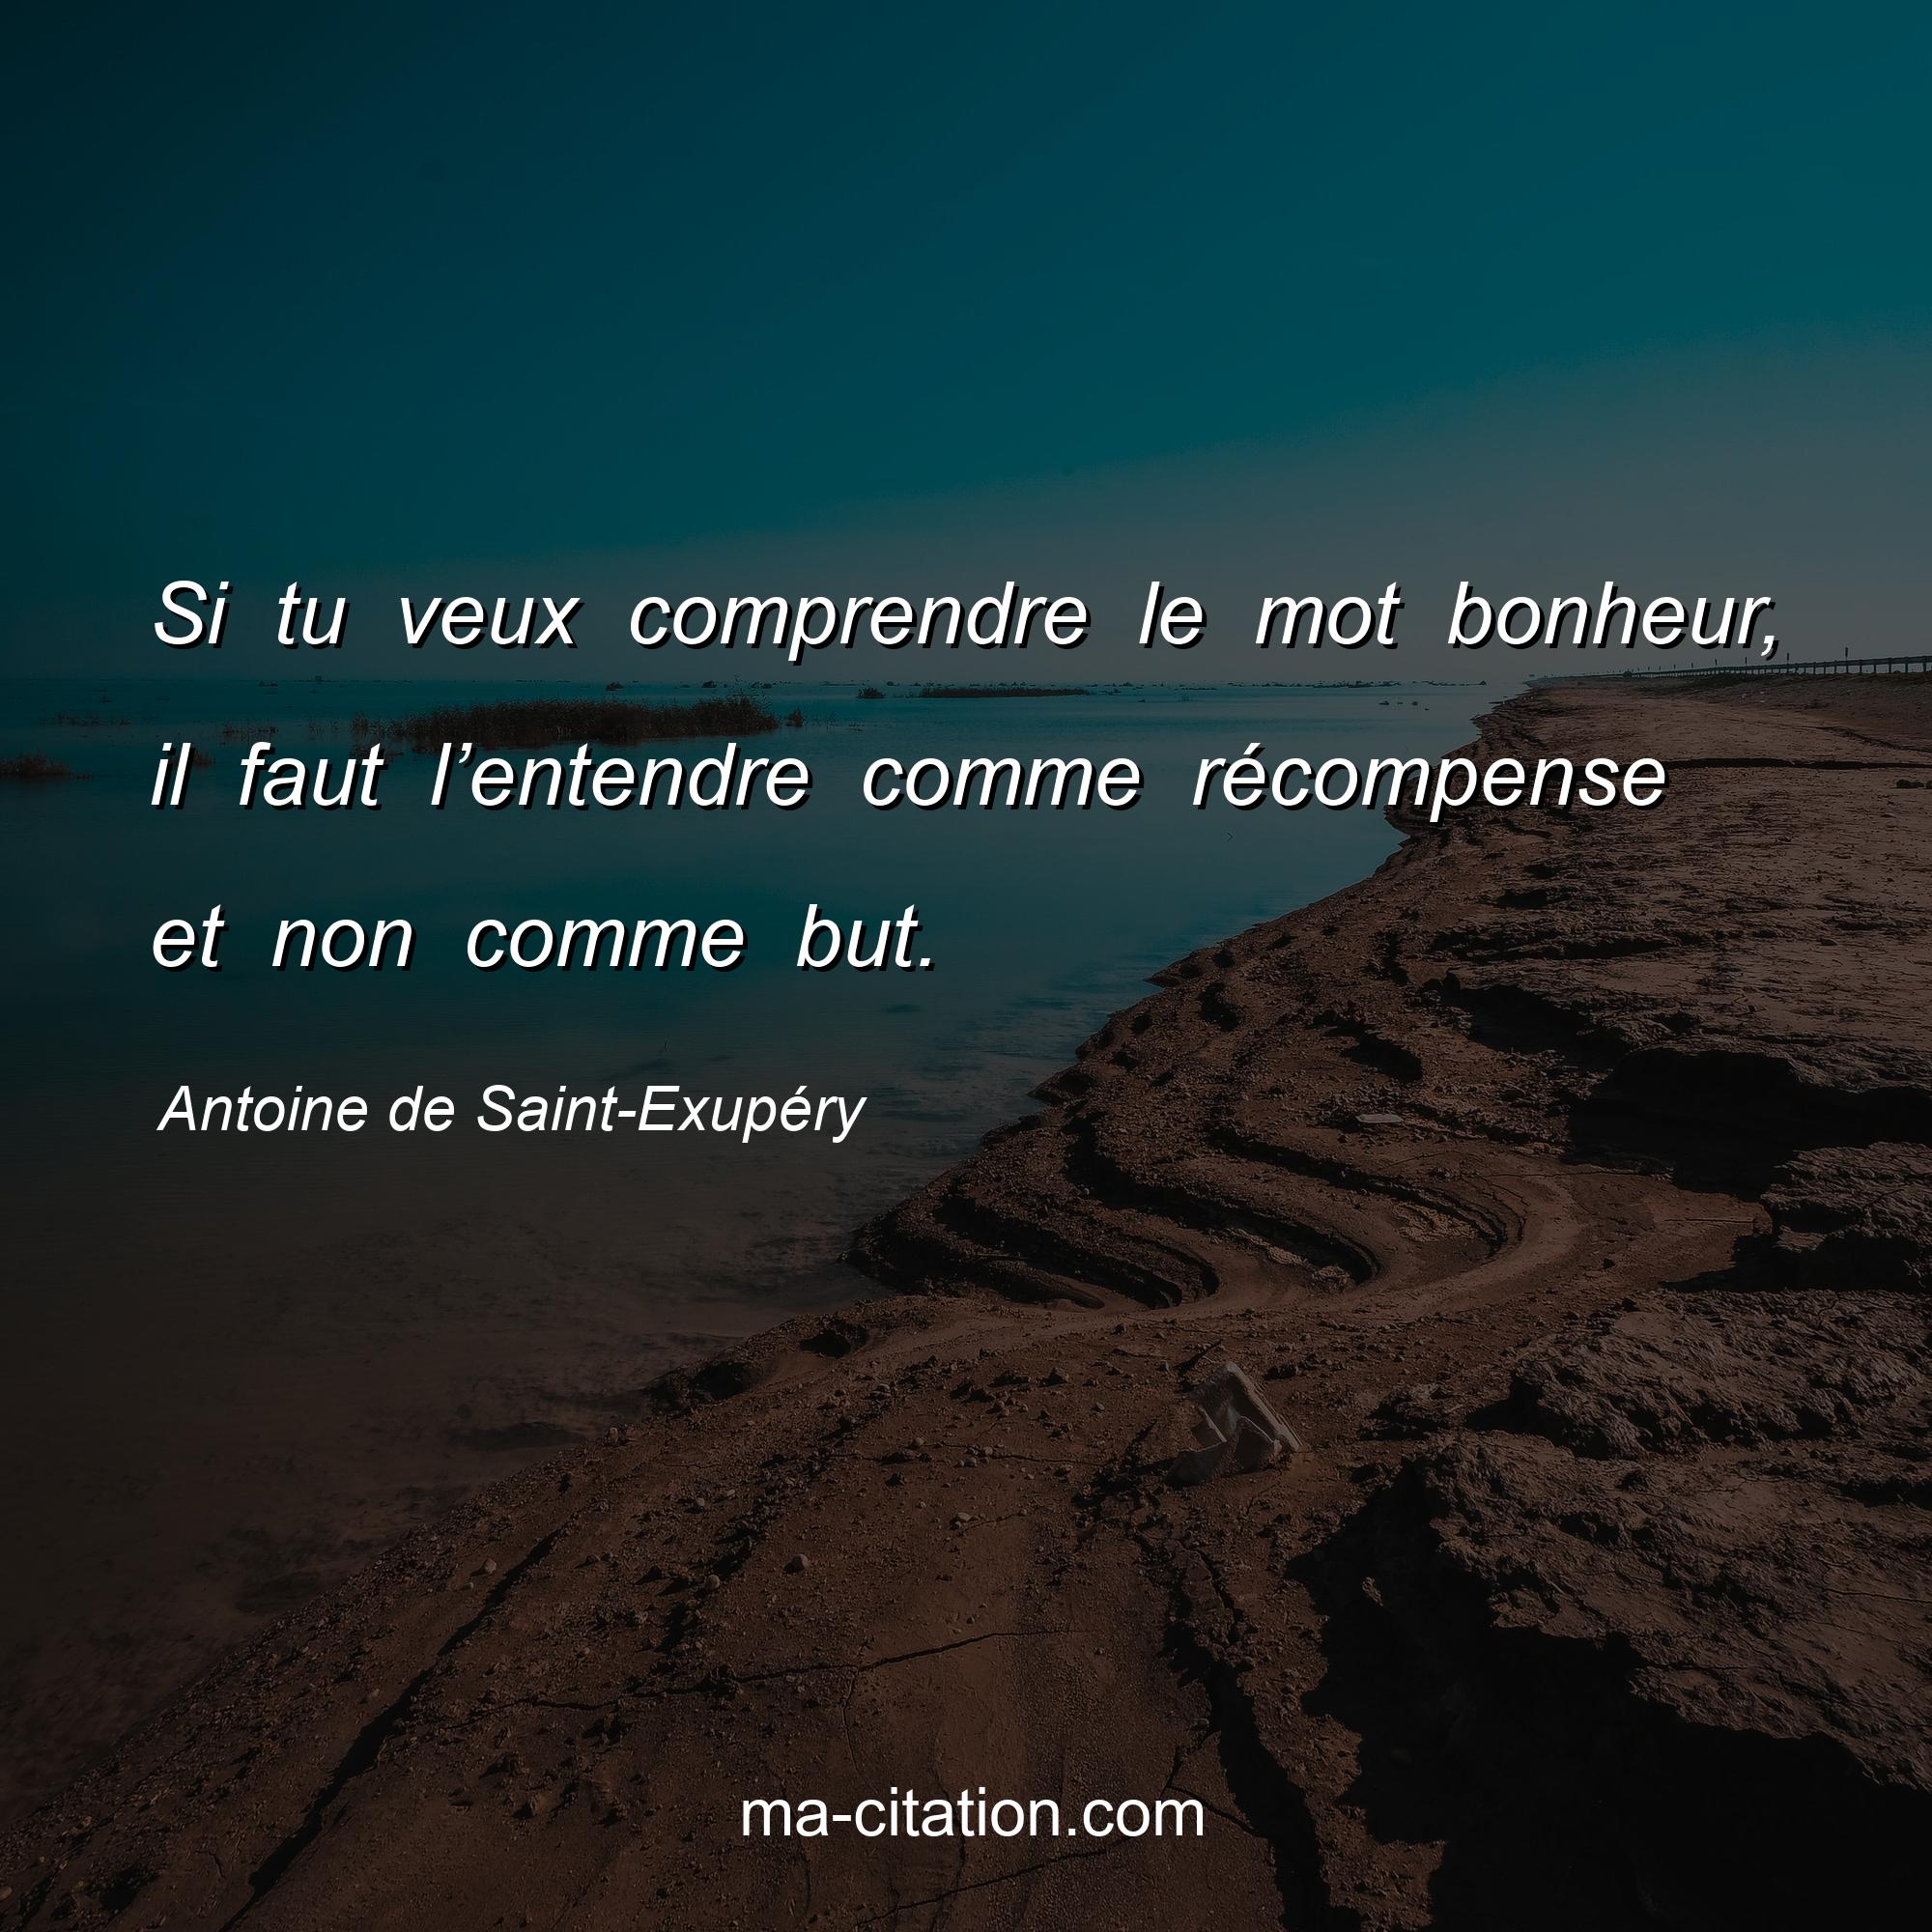 Antoine de Saint-Exupéry : Si tu veux comprendre le mot bonheur, il faut l’entendre comme récompense et non comme but.